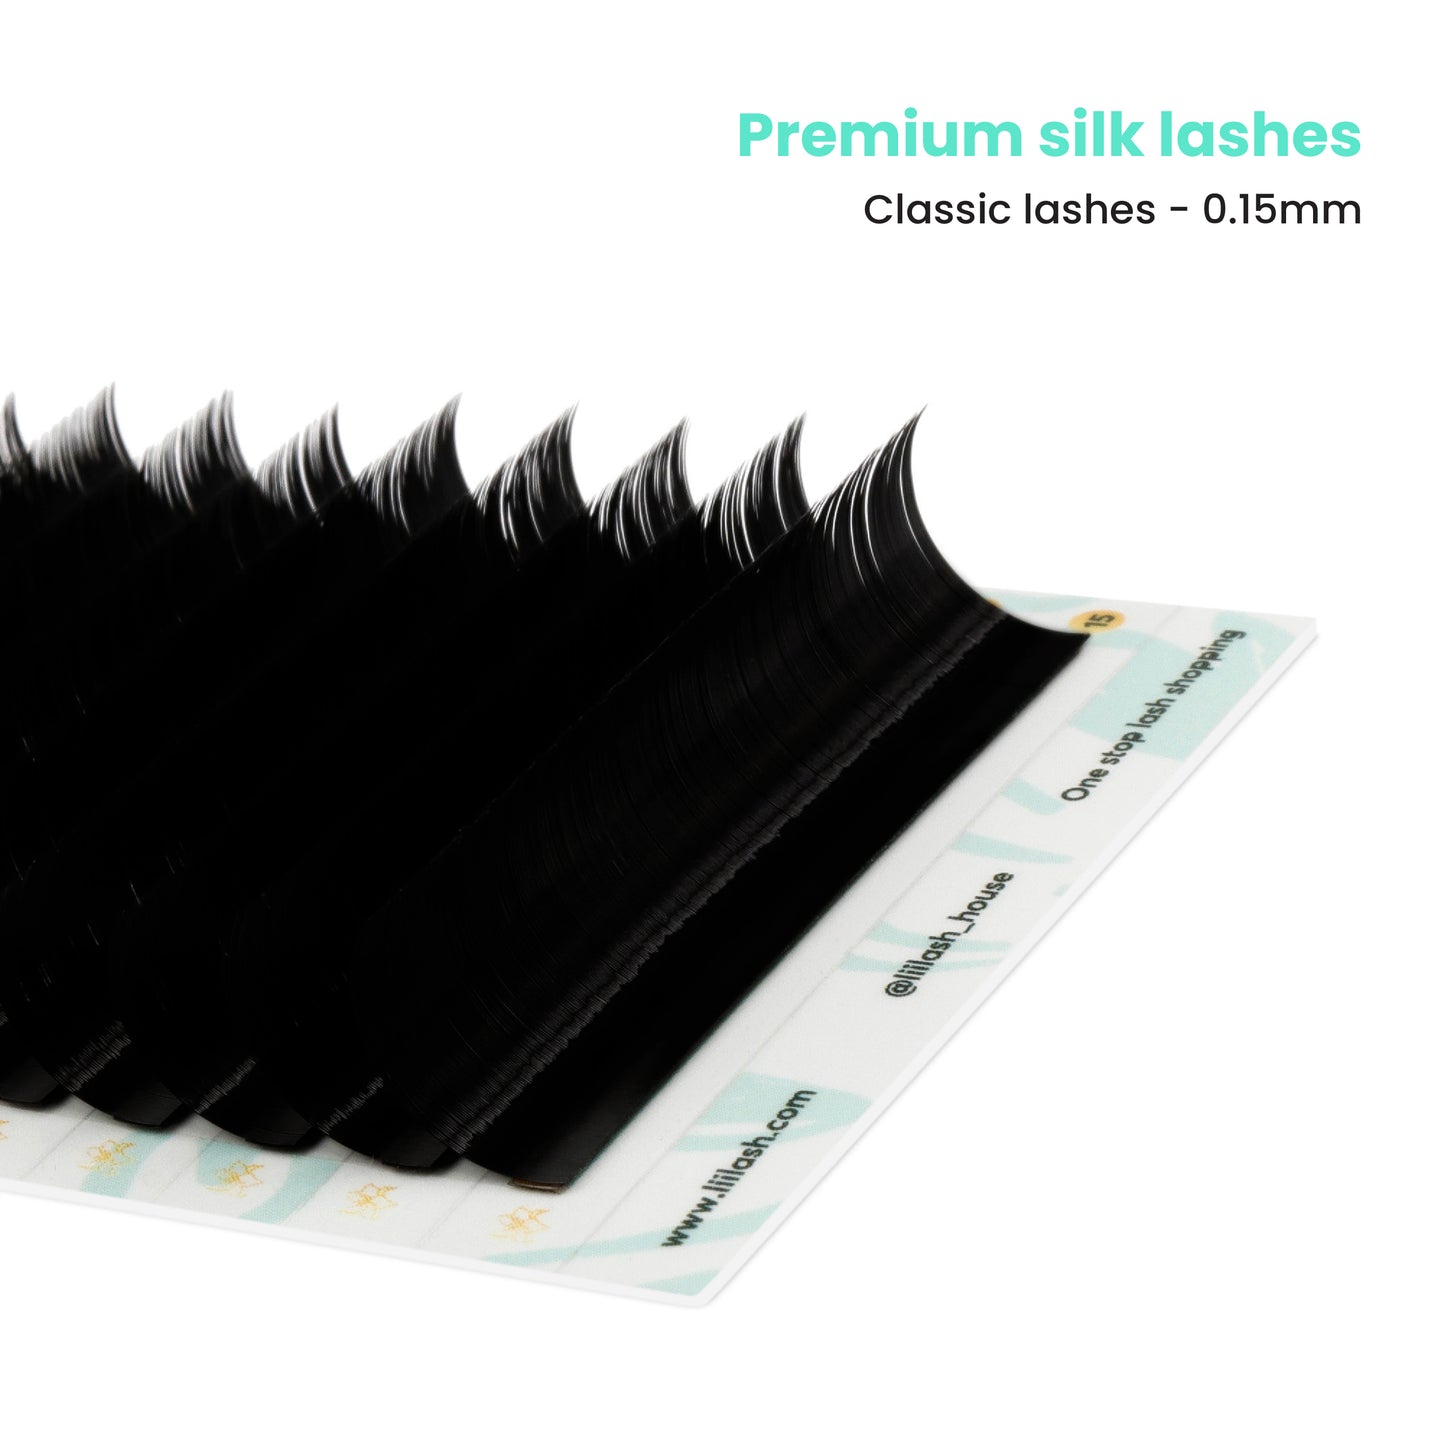 Premium Silk classic lashes 0.15mm